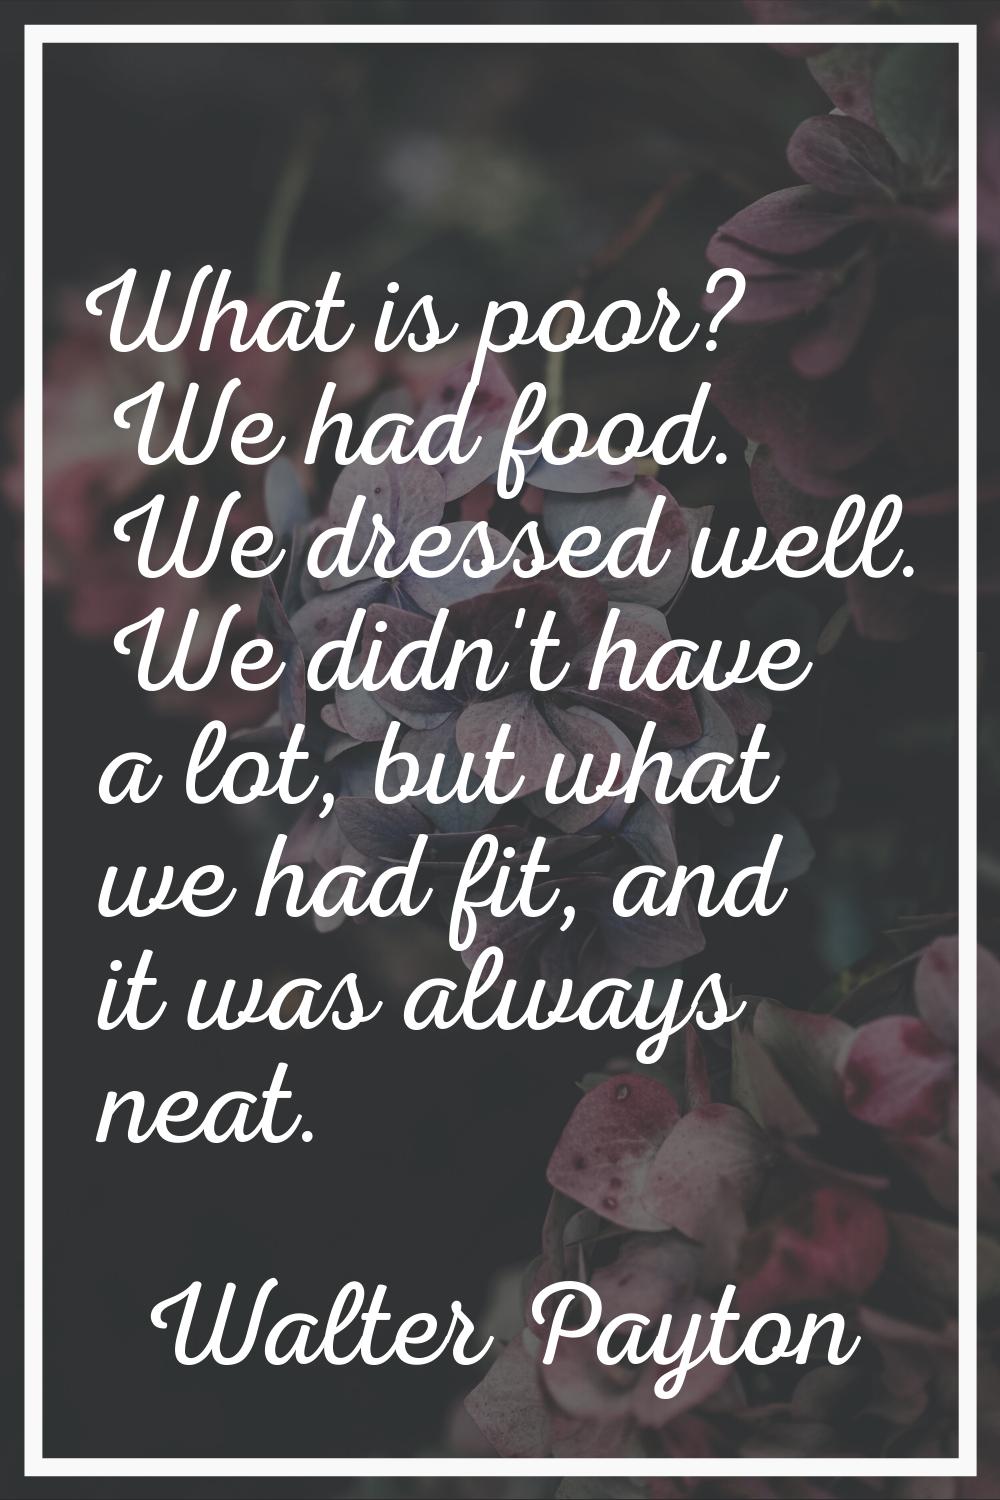 What is poor? We had food. We dressed well. We didn't have a lot, but what we had fit, and it was a